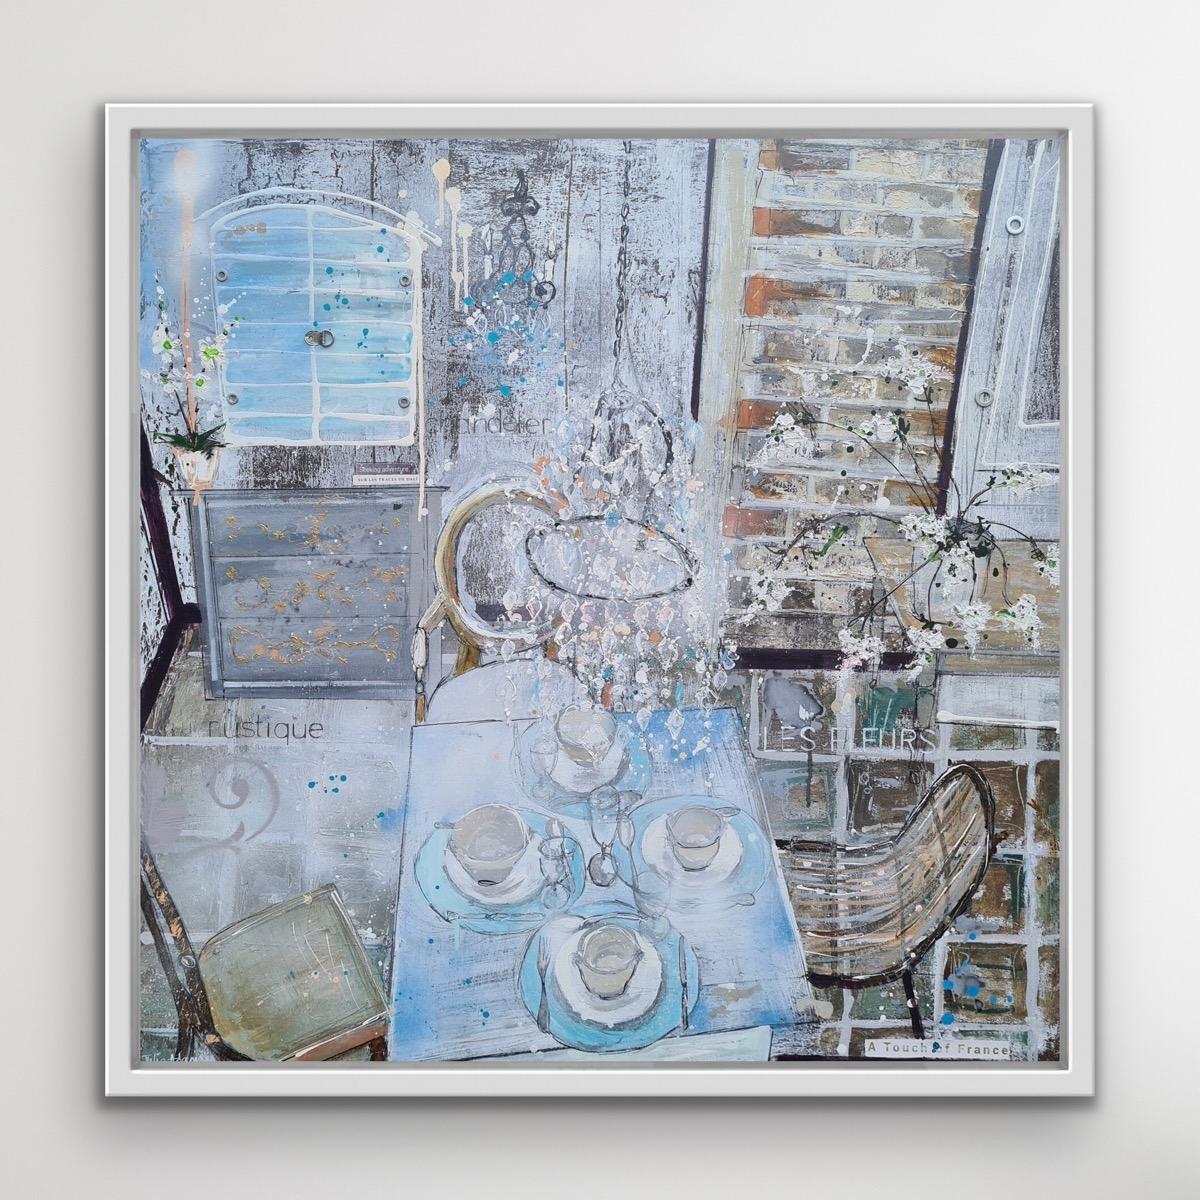 A Touch of France von Julia Adams ist ein blaues und silbernes Gemälde in Mischtechnik für Innenräume.
Entdecken Sie Originalkunstwerke von Julia Adams, die Sie online und in unserer Kunstgalerie Wychwood Art in Deddington kaufen können. Julia Adams